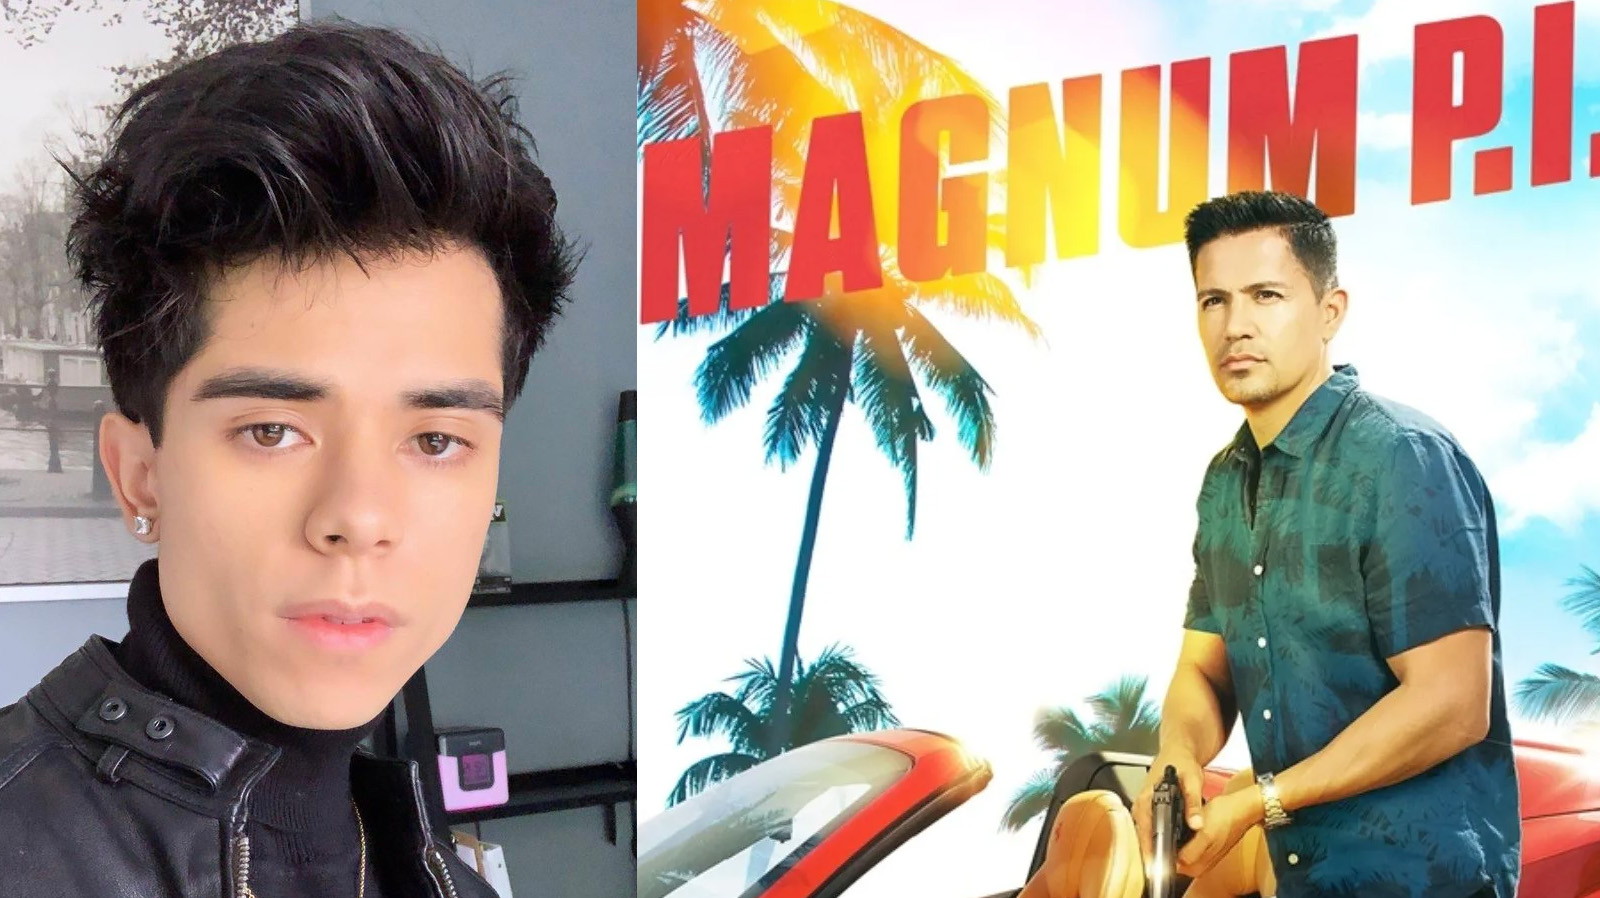 Martín Martínez y "Magnum P.I."